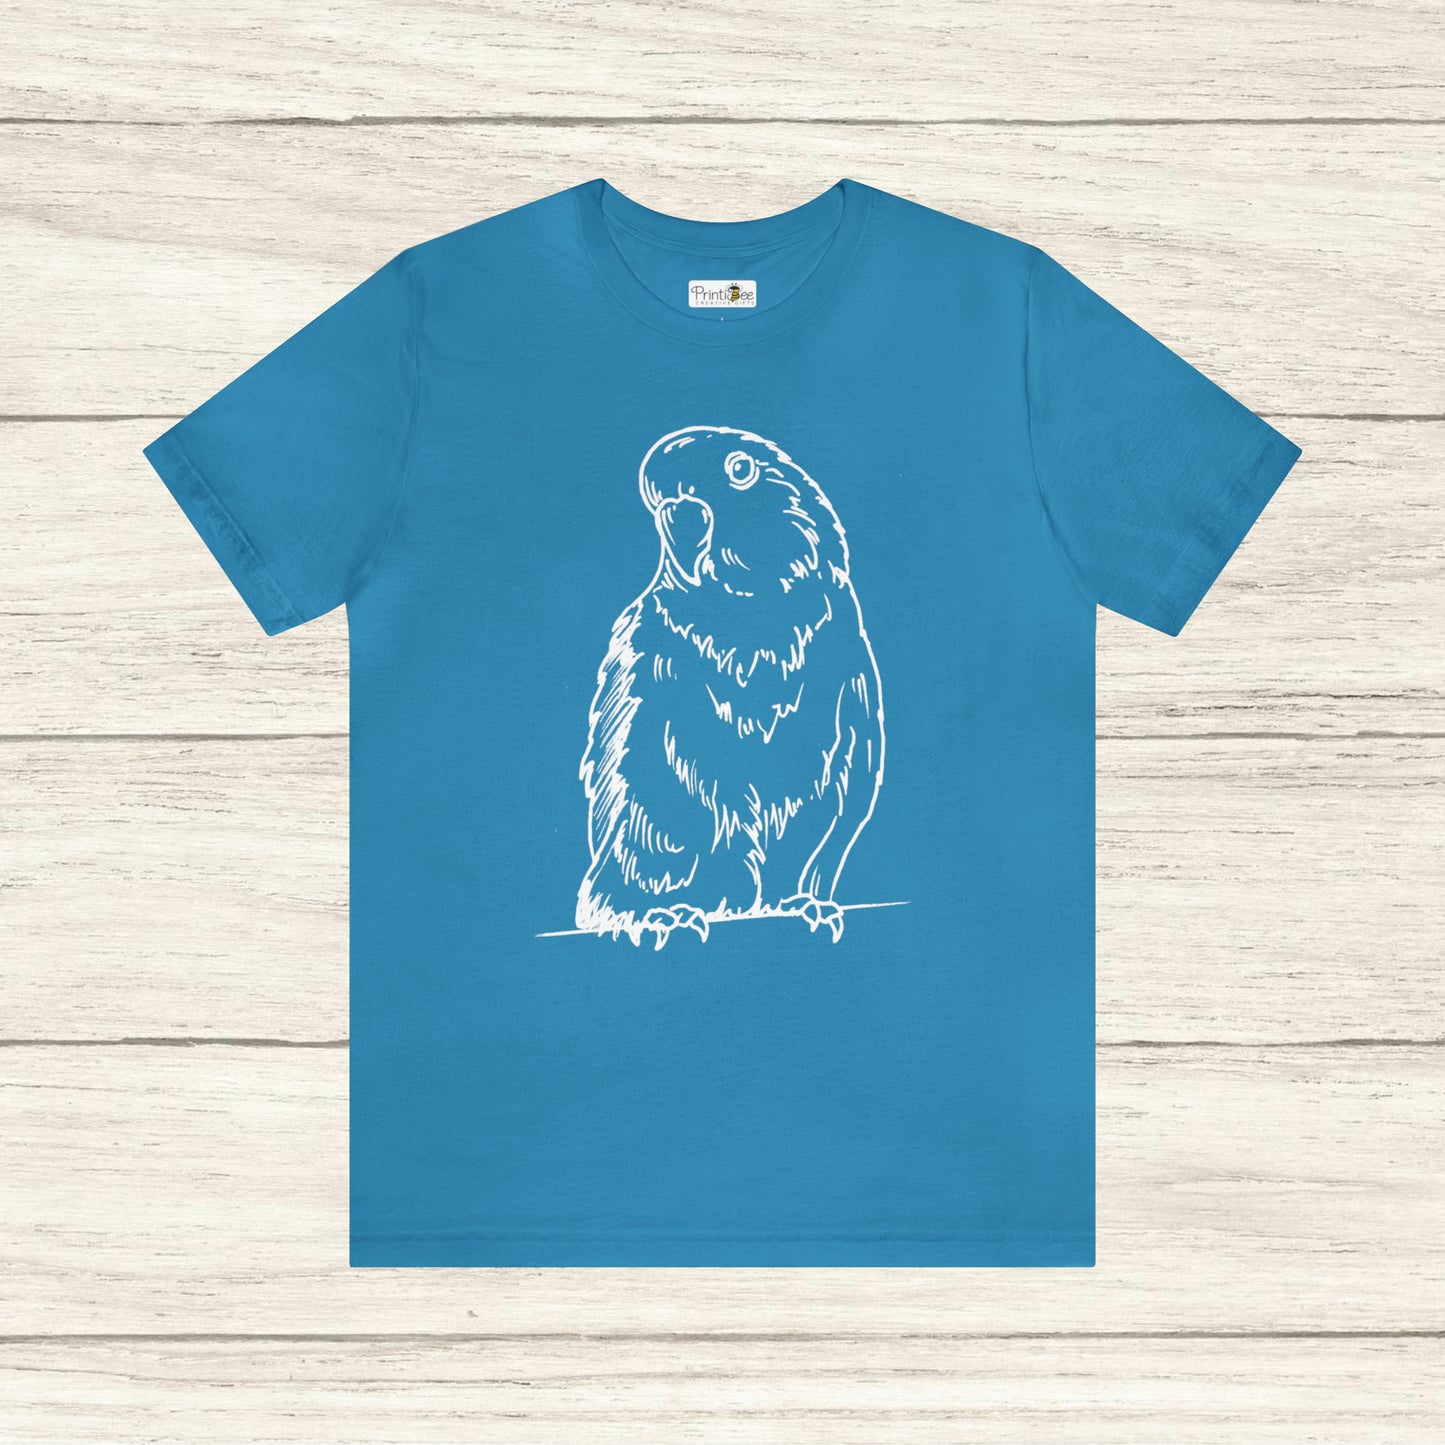 Floofball Lovebird, Tee-shirt Line Art